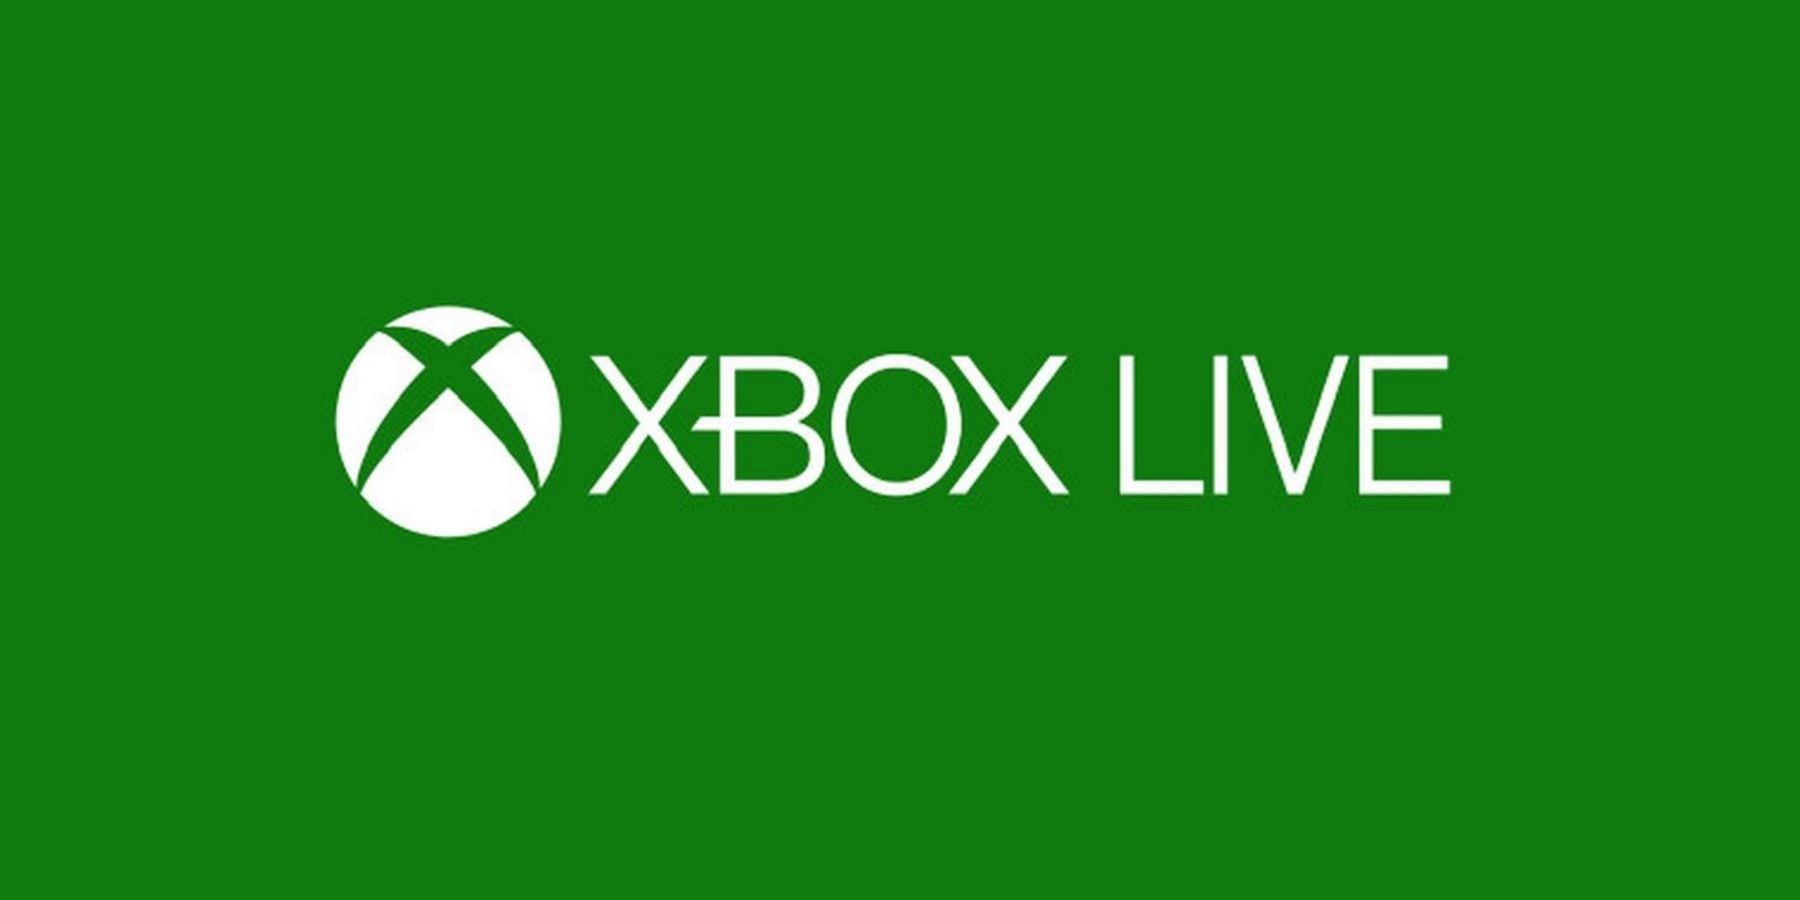 xbox live logo